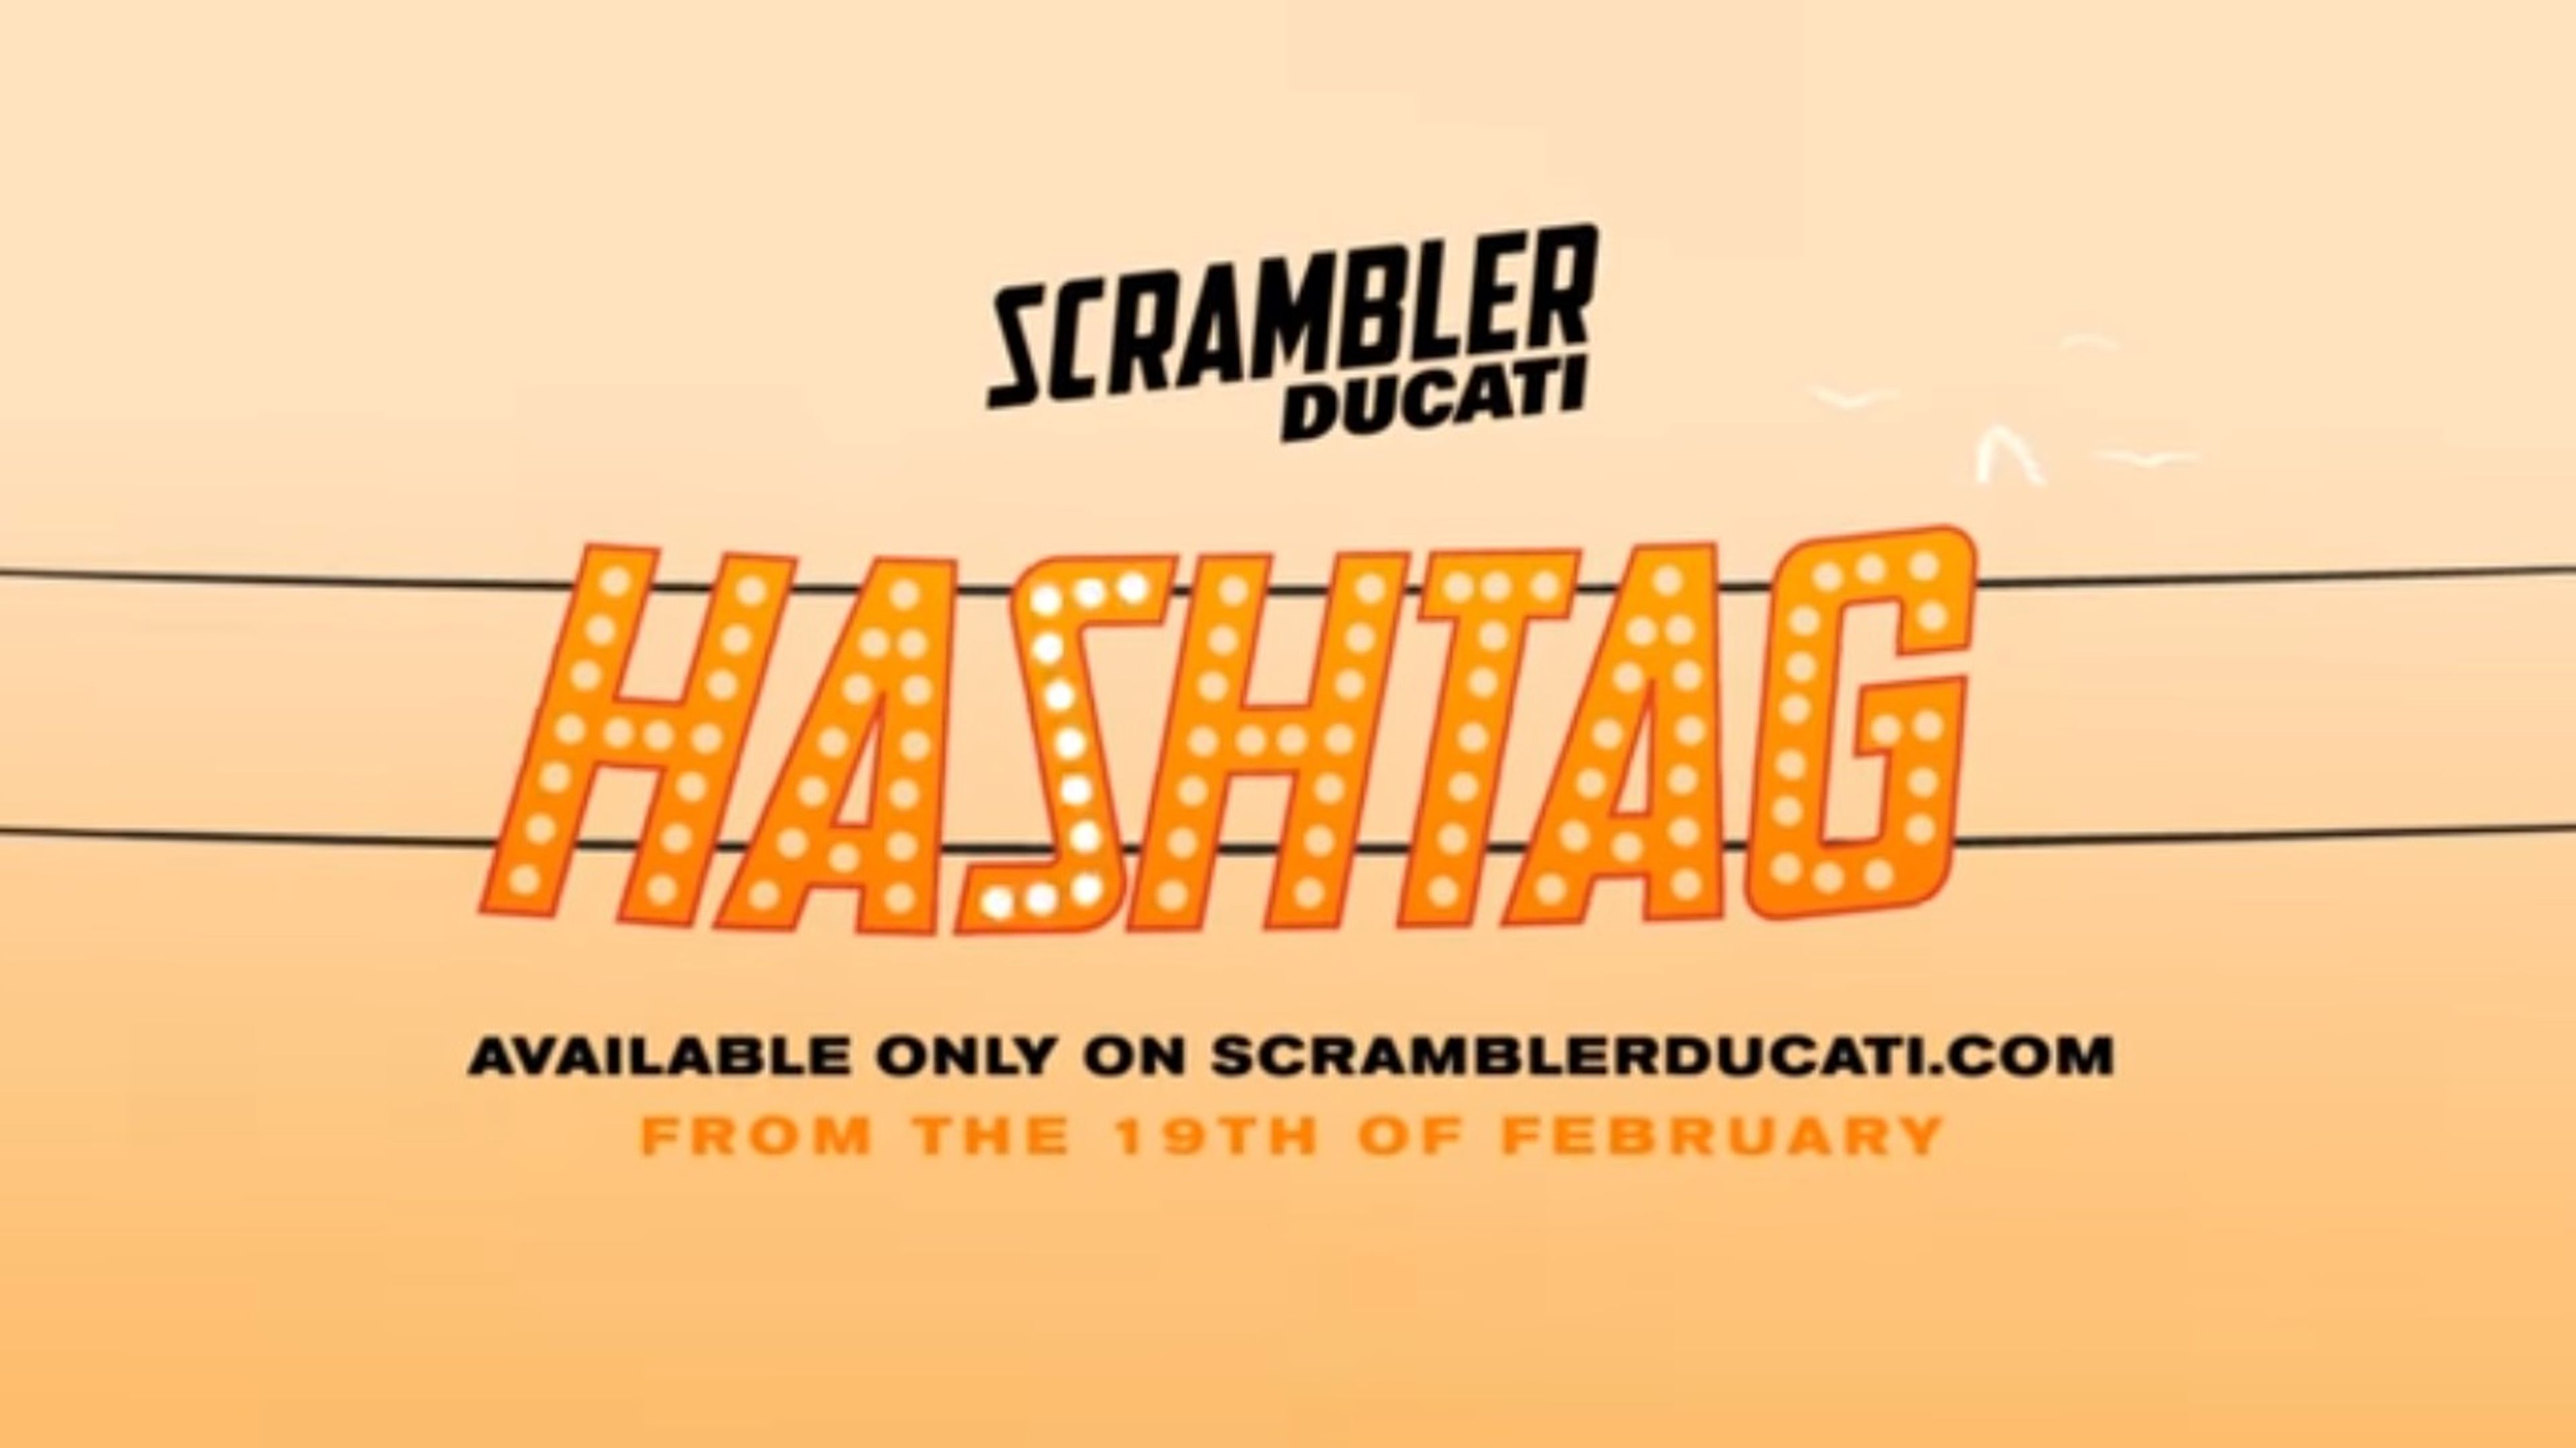 Ducati Scrambler Hashtag